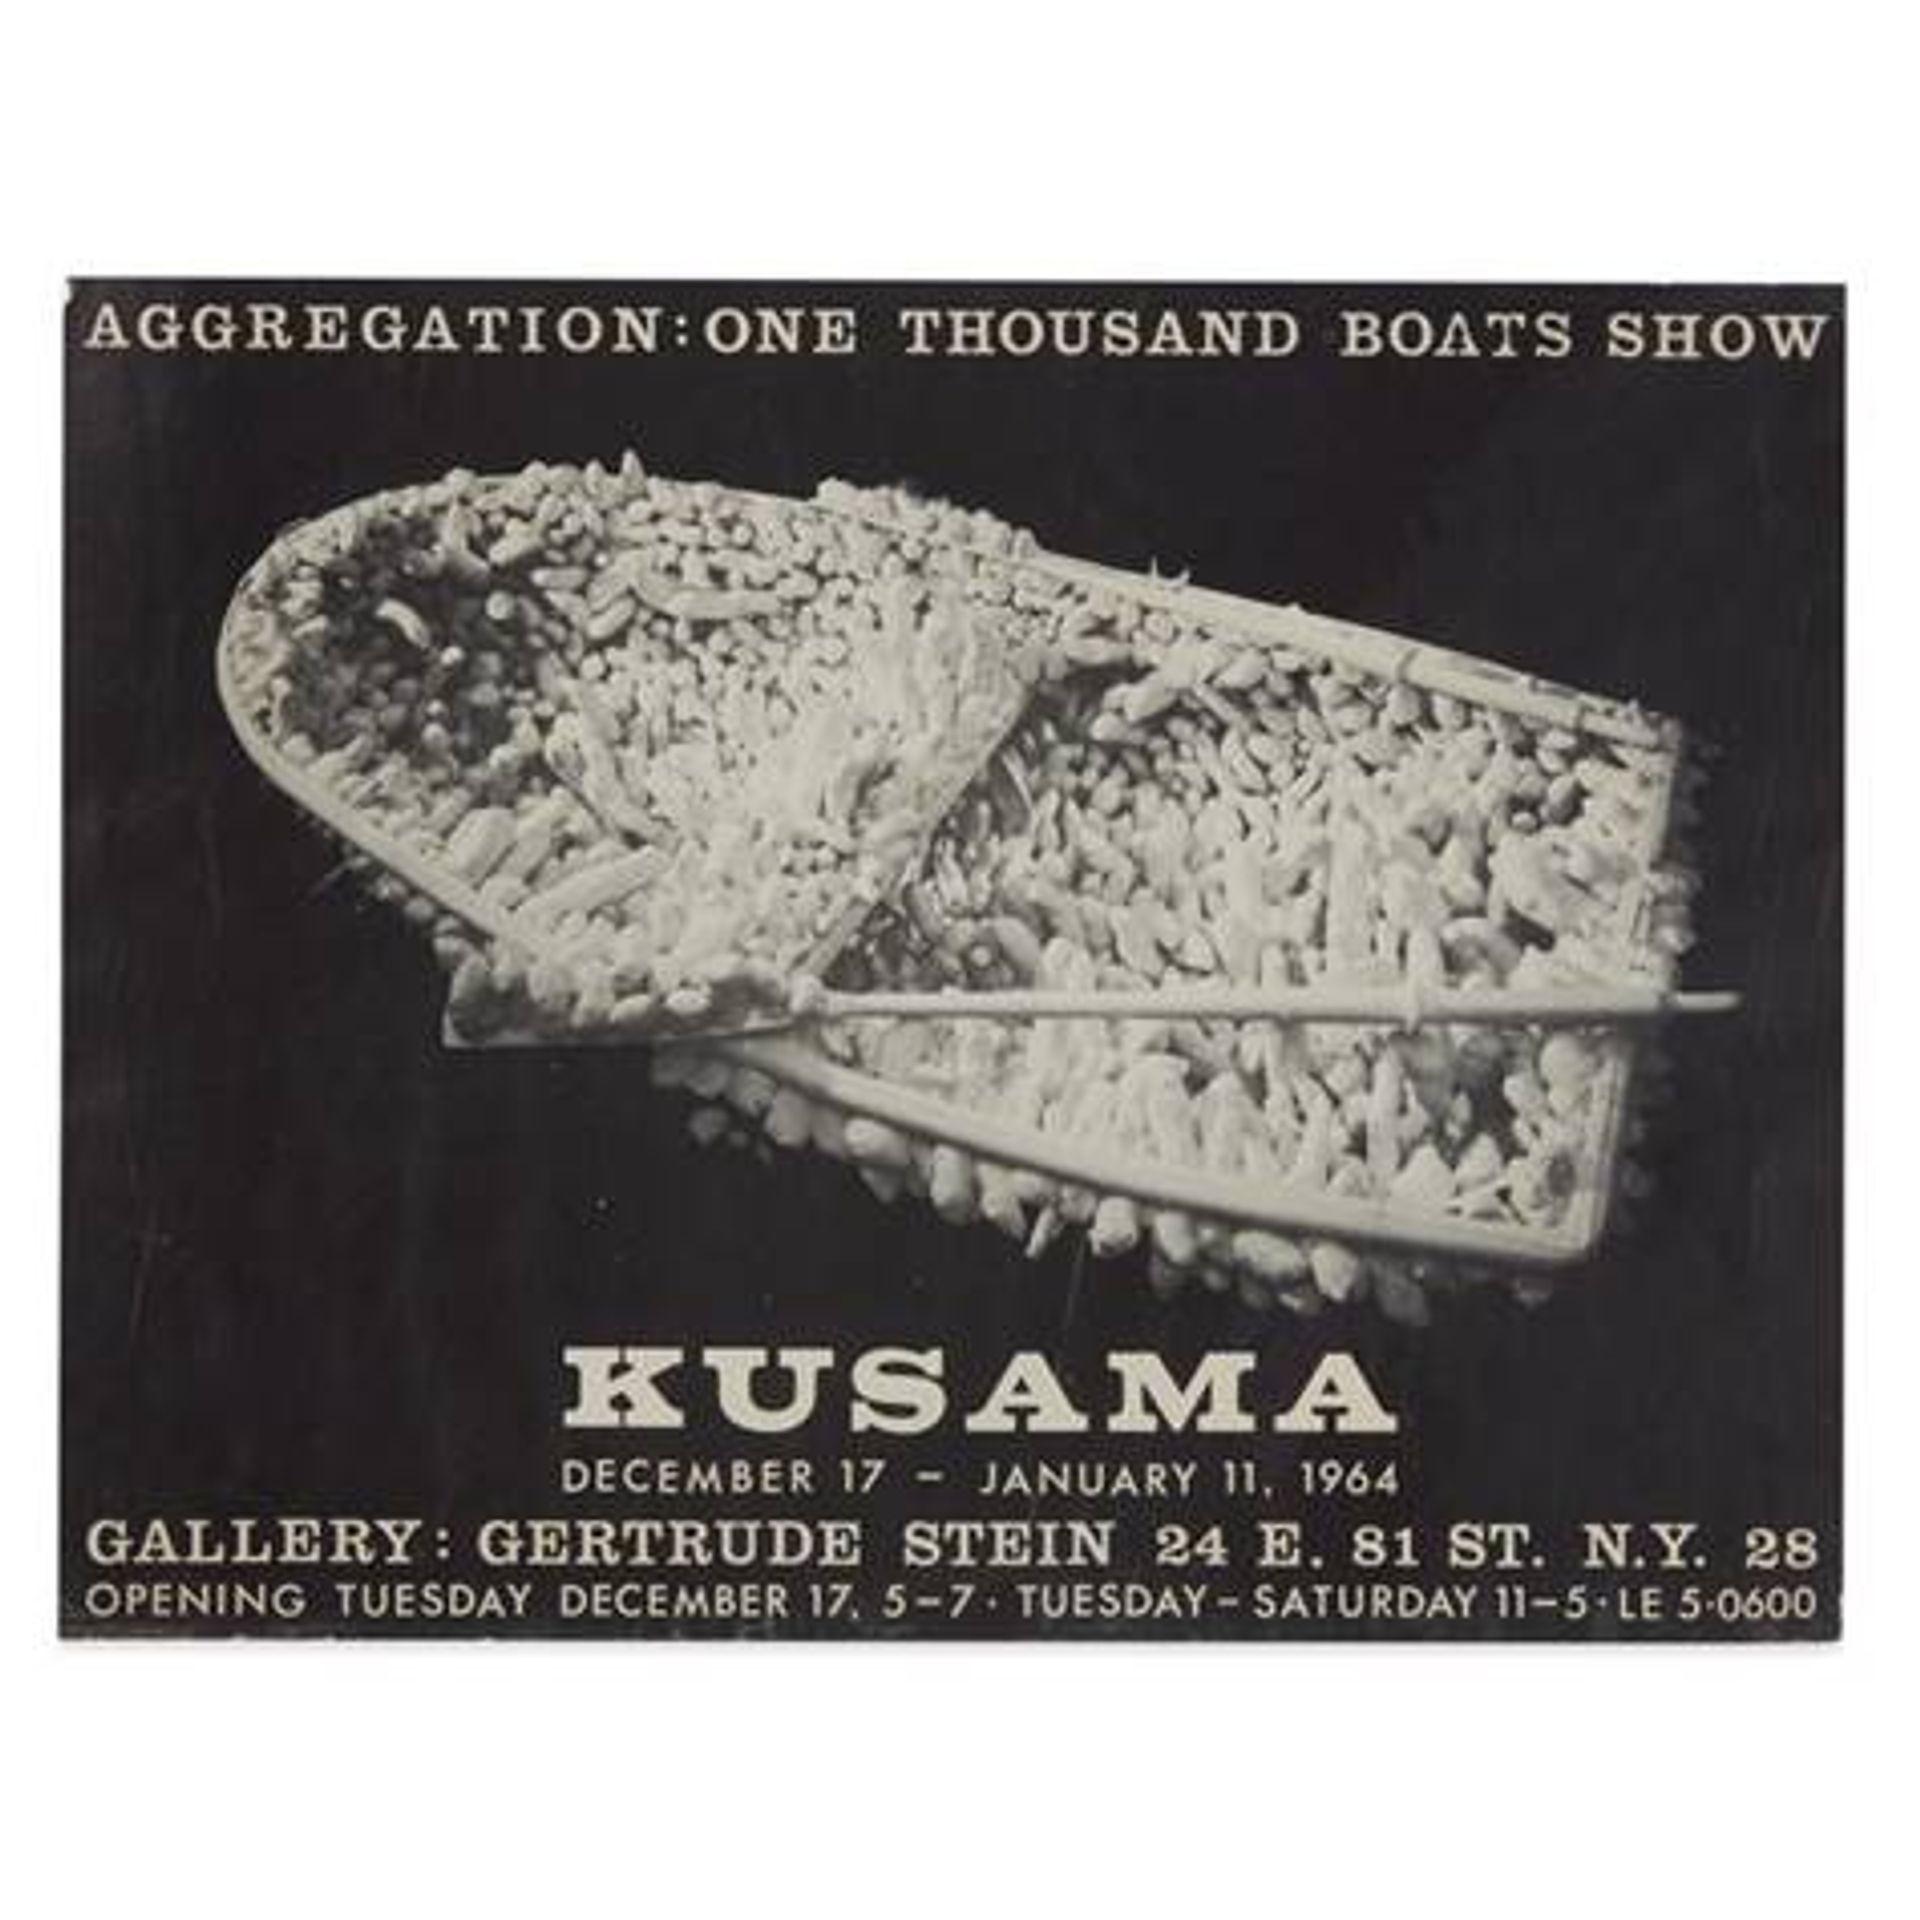 כחלק מפרויקט ההיסטוריה האוראלית של WADDA, מייסדת-שותפה ורוניק שגנון-בורק עובדת עם גלריה גרטרוד סטיין, שהעניקה ל-Yayoi Kusama תערוכת יחיד בתחילת הקריירה שלה בניו יורק בשנת 1964. למעלה: כרזת התערוכה: One Thousand Boats Show: Kusama, Gallery Gertrude שטיין (1964)

באדיבות הגלריה גרטרוד סטיין